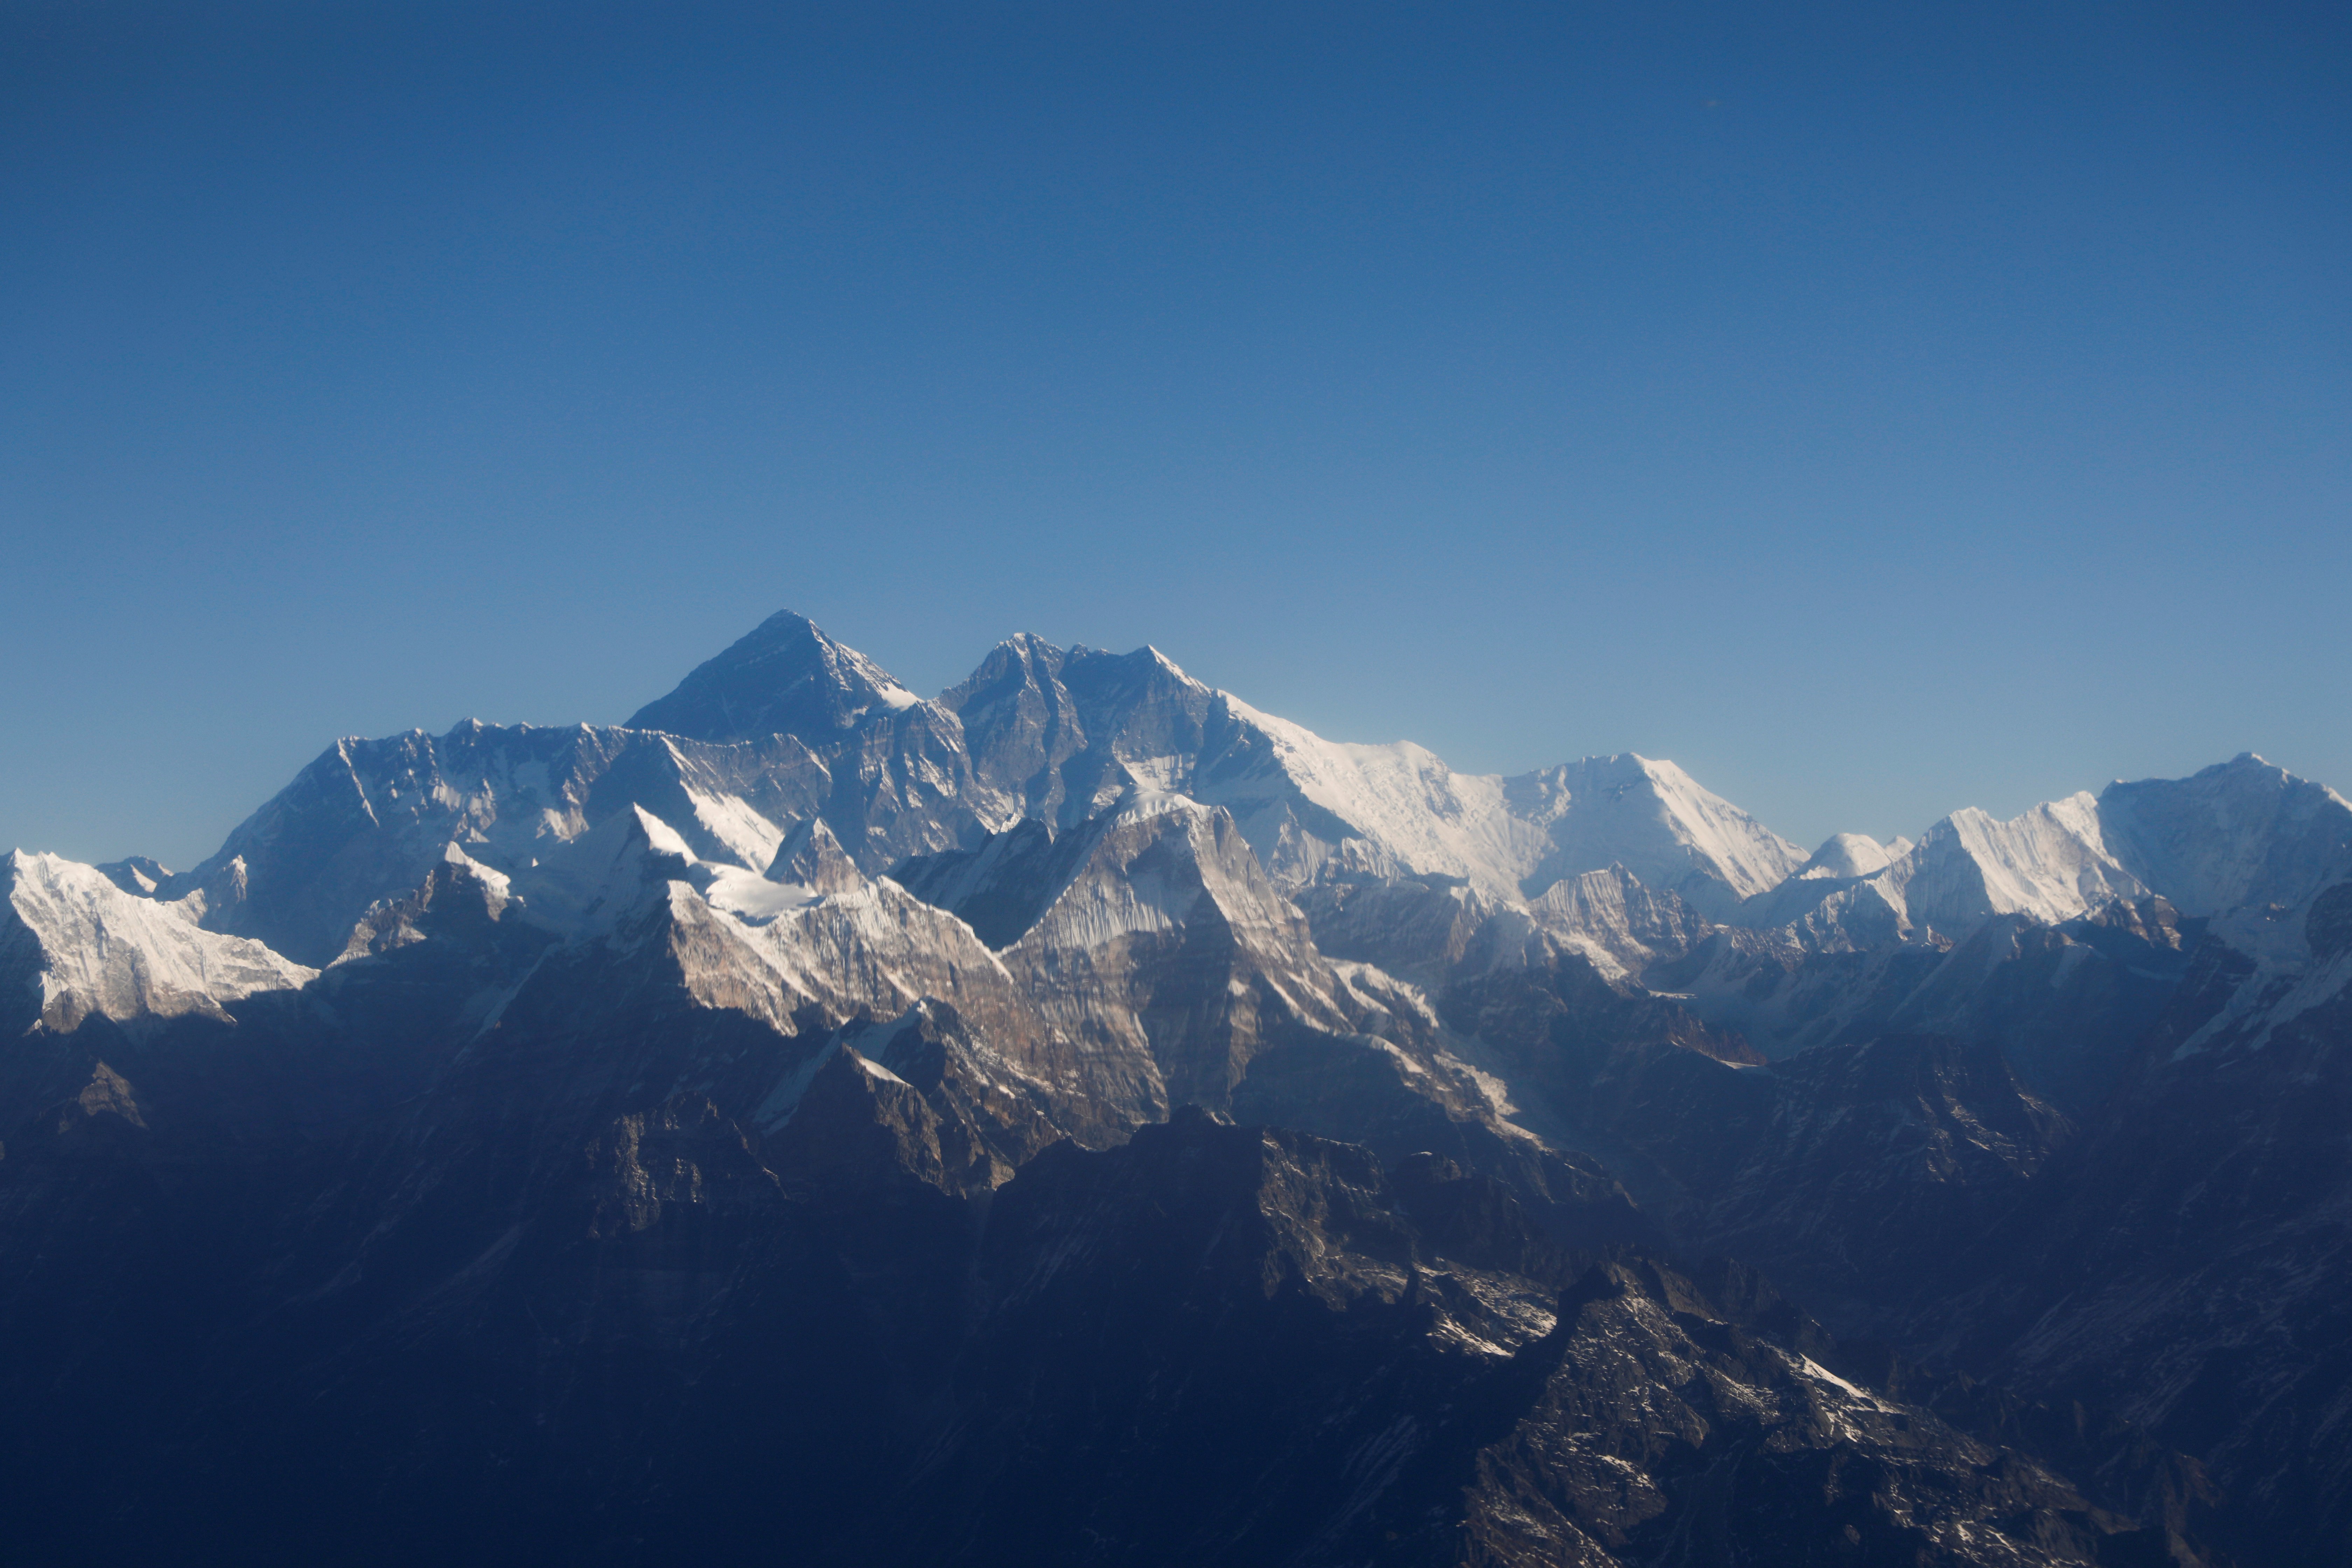 O que muda no Everest com o aquecimento global